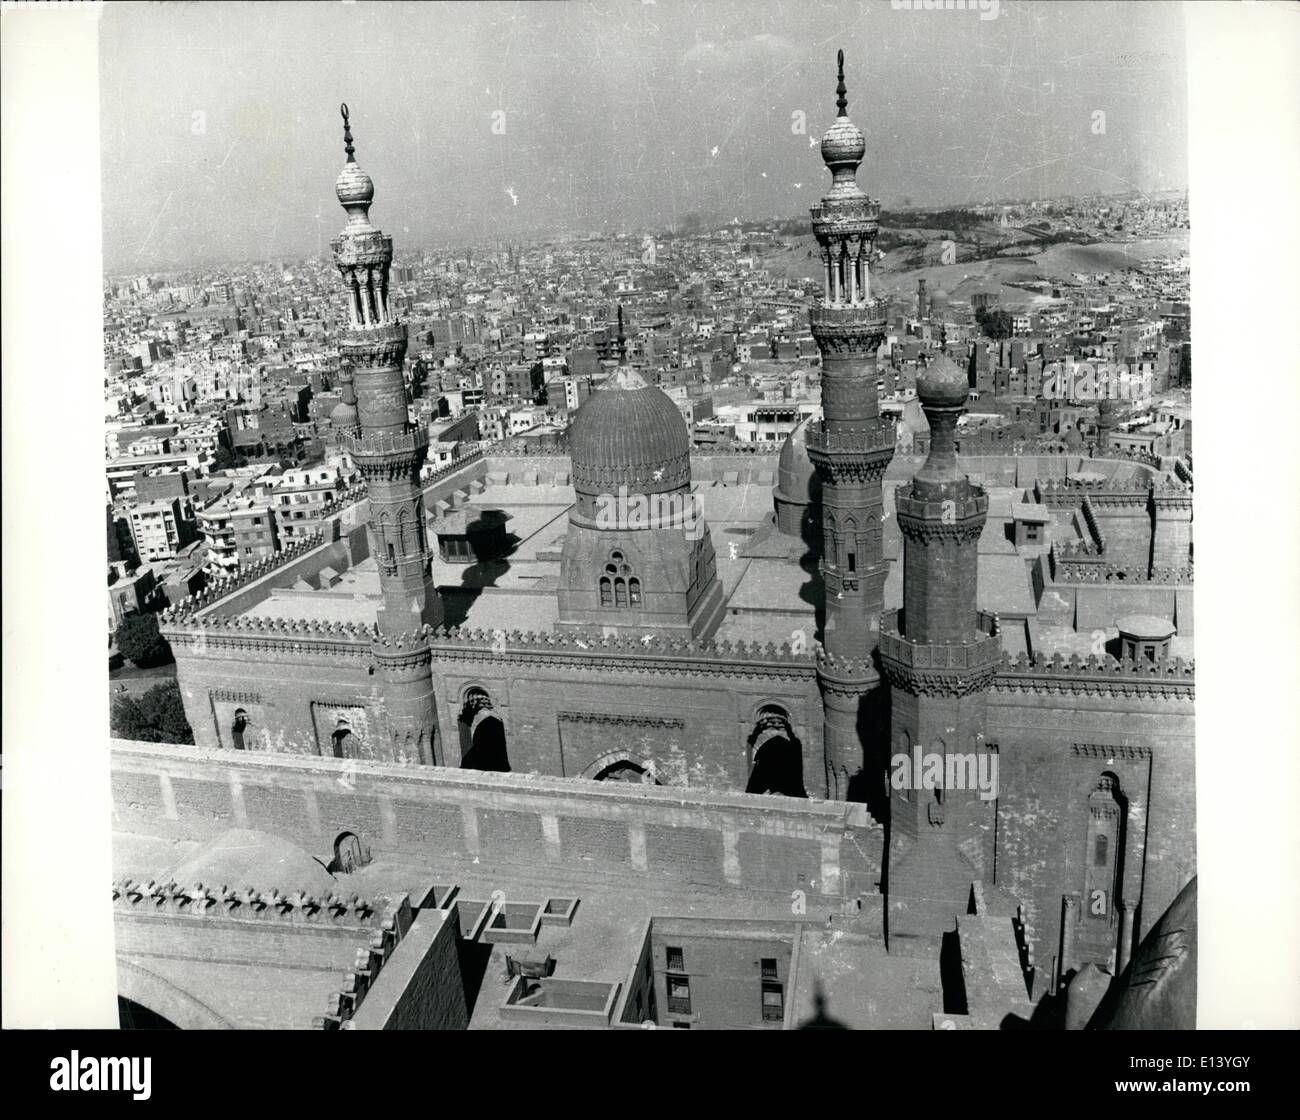 27. März 2012 - Al-Azhar-Universität, liegt in der Hitze des Cairo Kairo glänzend - Hochburg des Islam. Es ist umgeben von den alten beliebten Vierteln der Stadt. Stockfoto